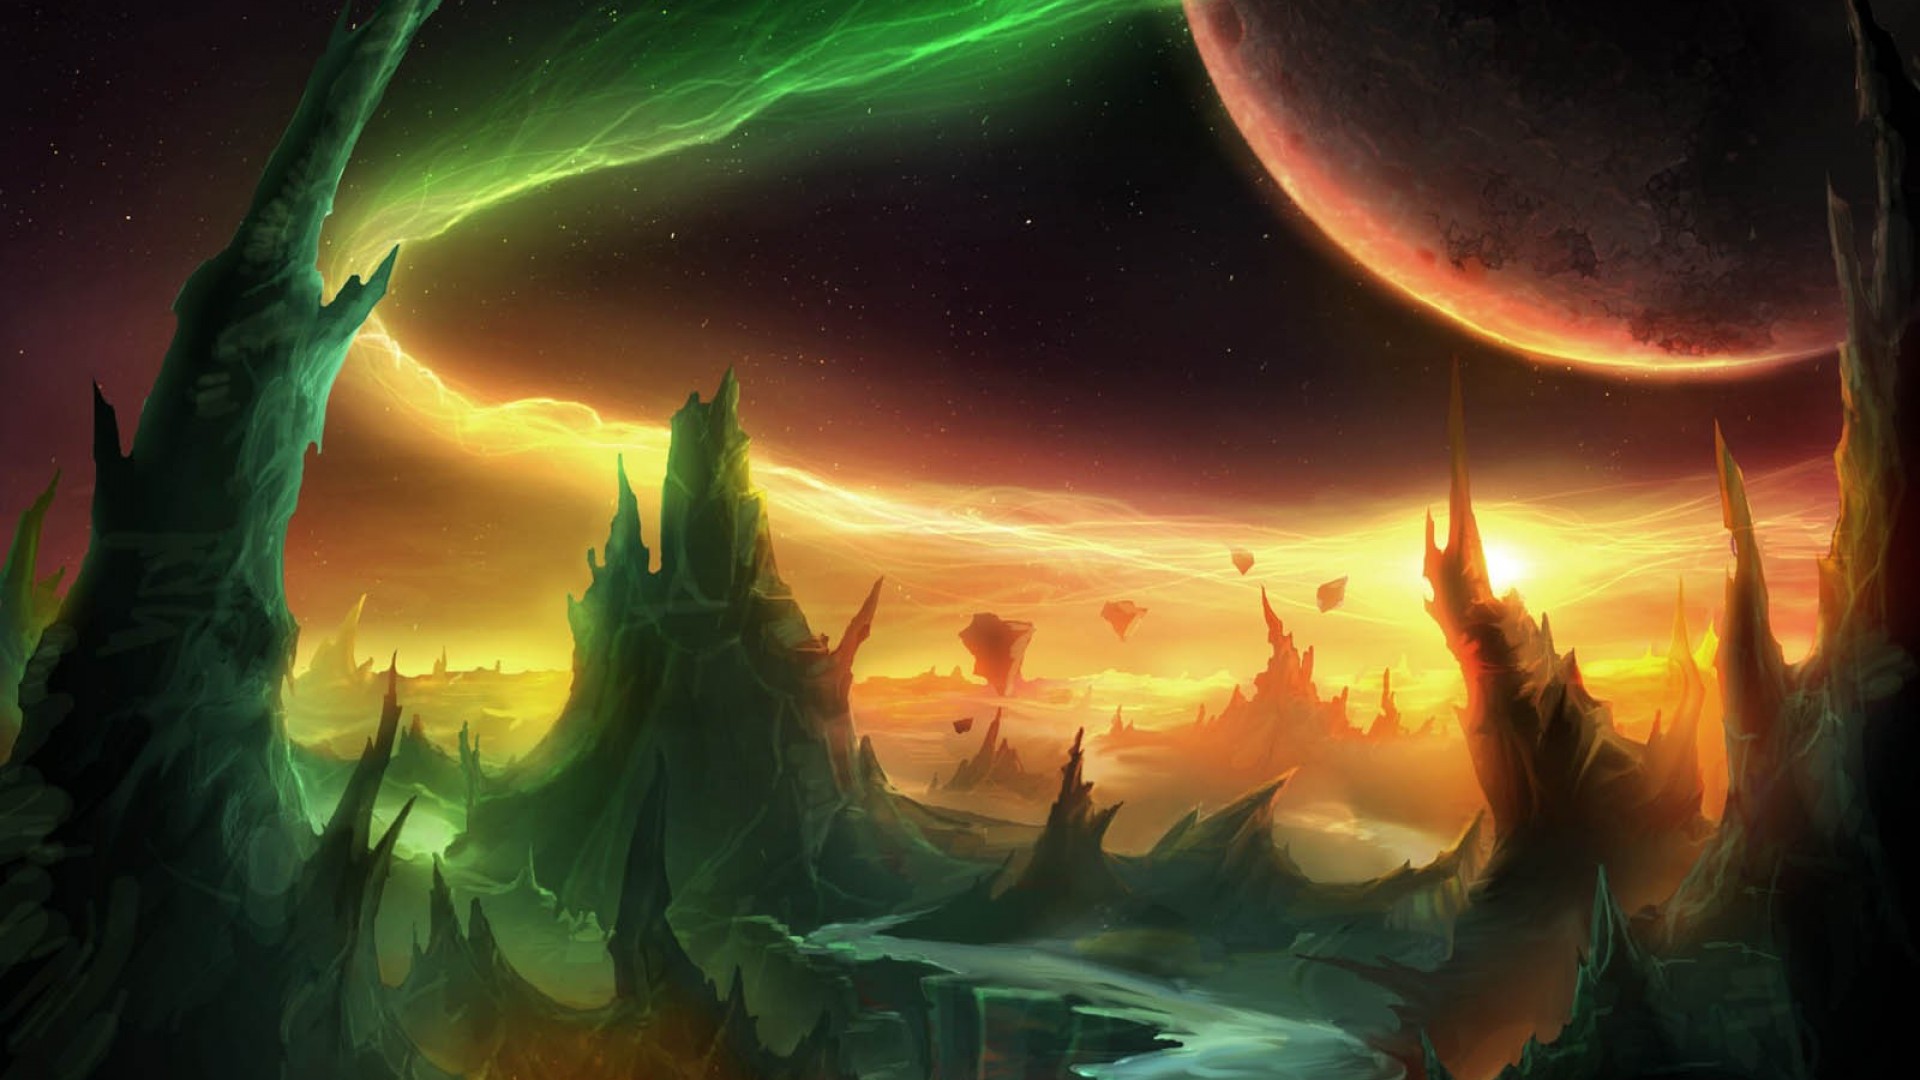 Laden Sie World Of Warcraft: Warlords Of Draenor HD-Desktop-Hintergründe herunter